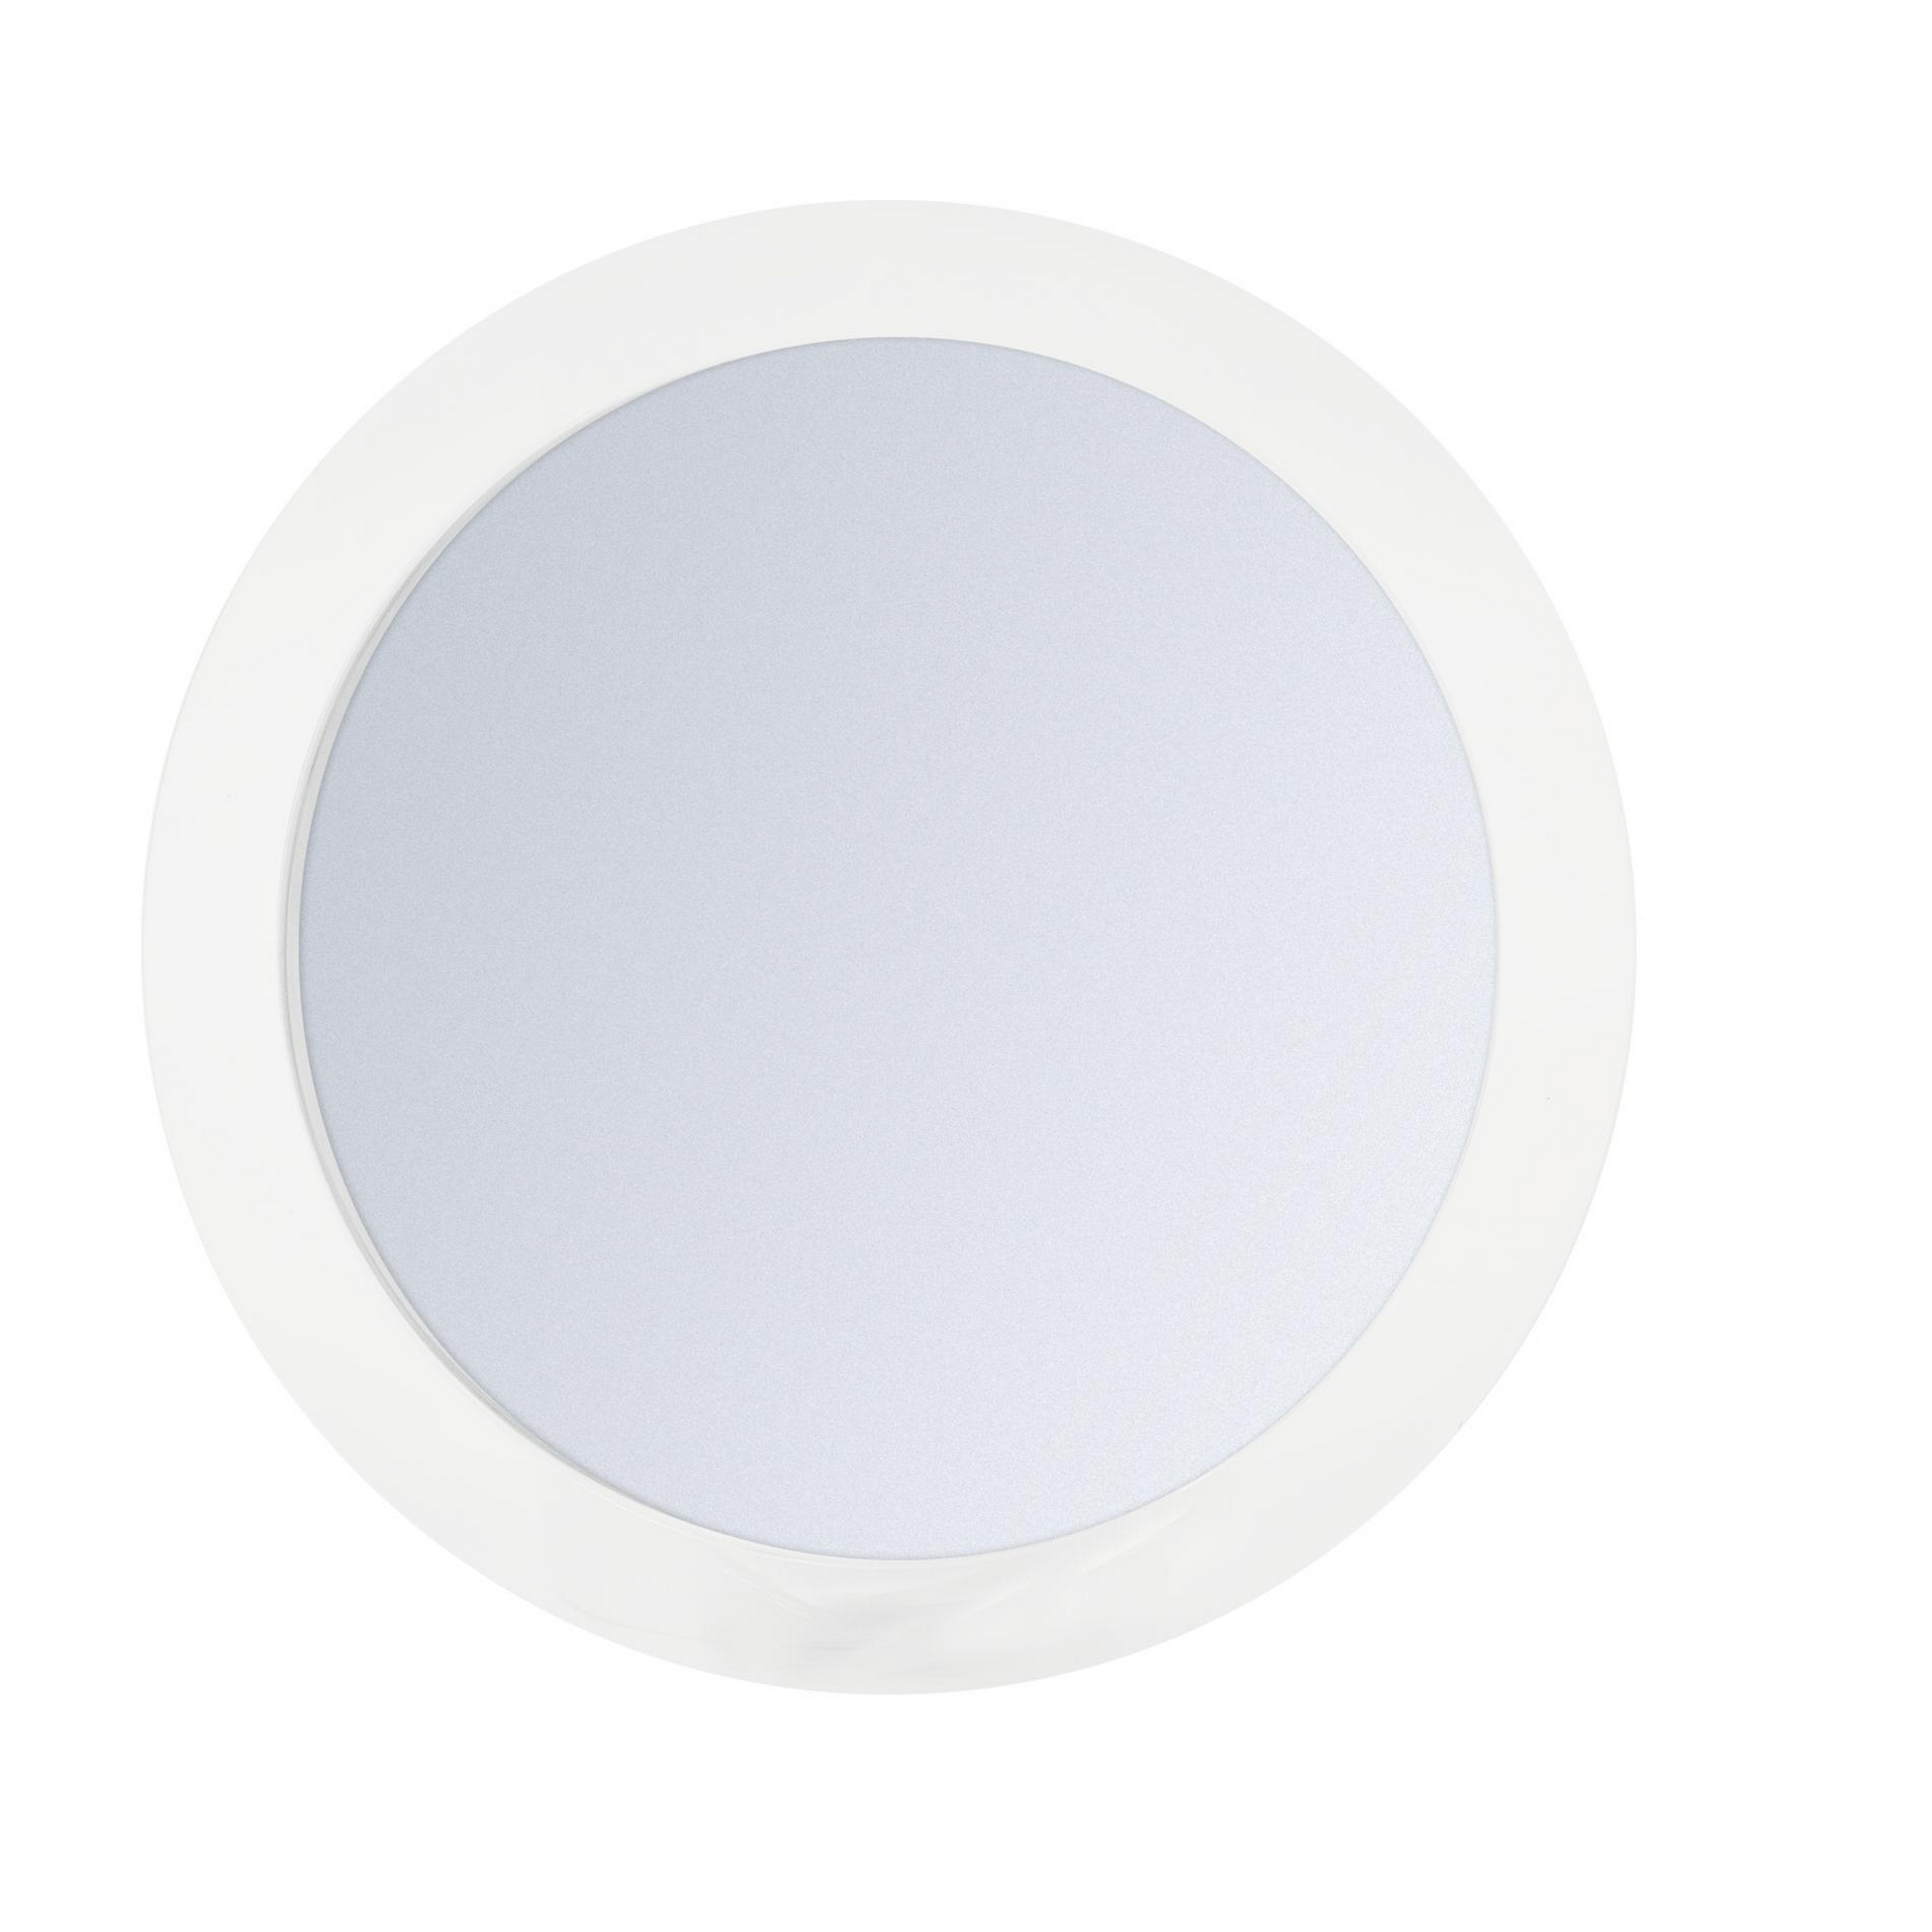 Kosmetikspiegel 'Mulan' transparent Ø 12,5 cm mit Saugnapf + product picture